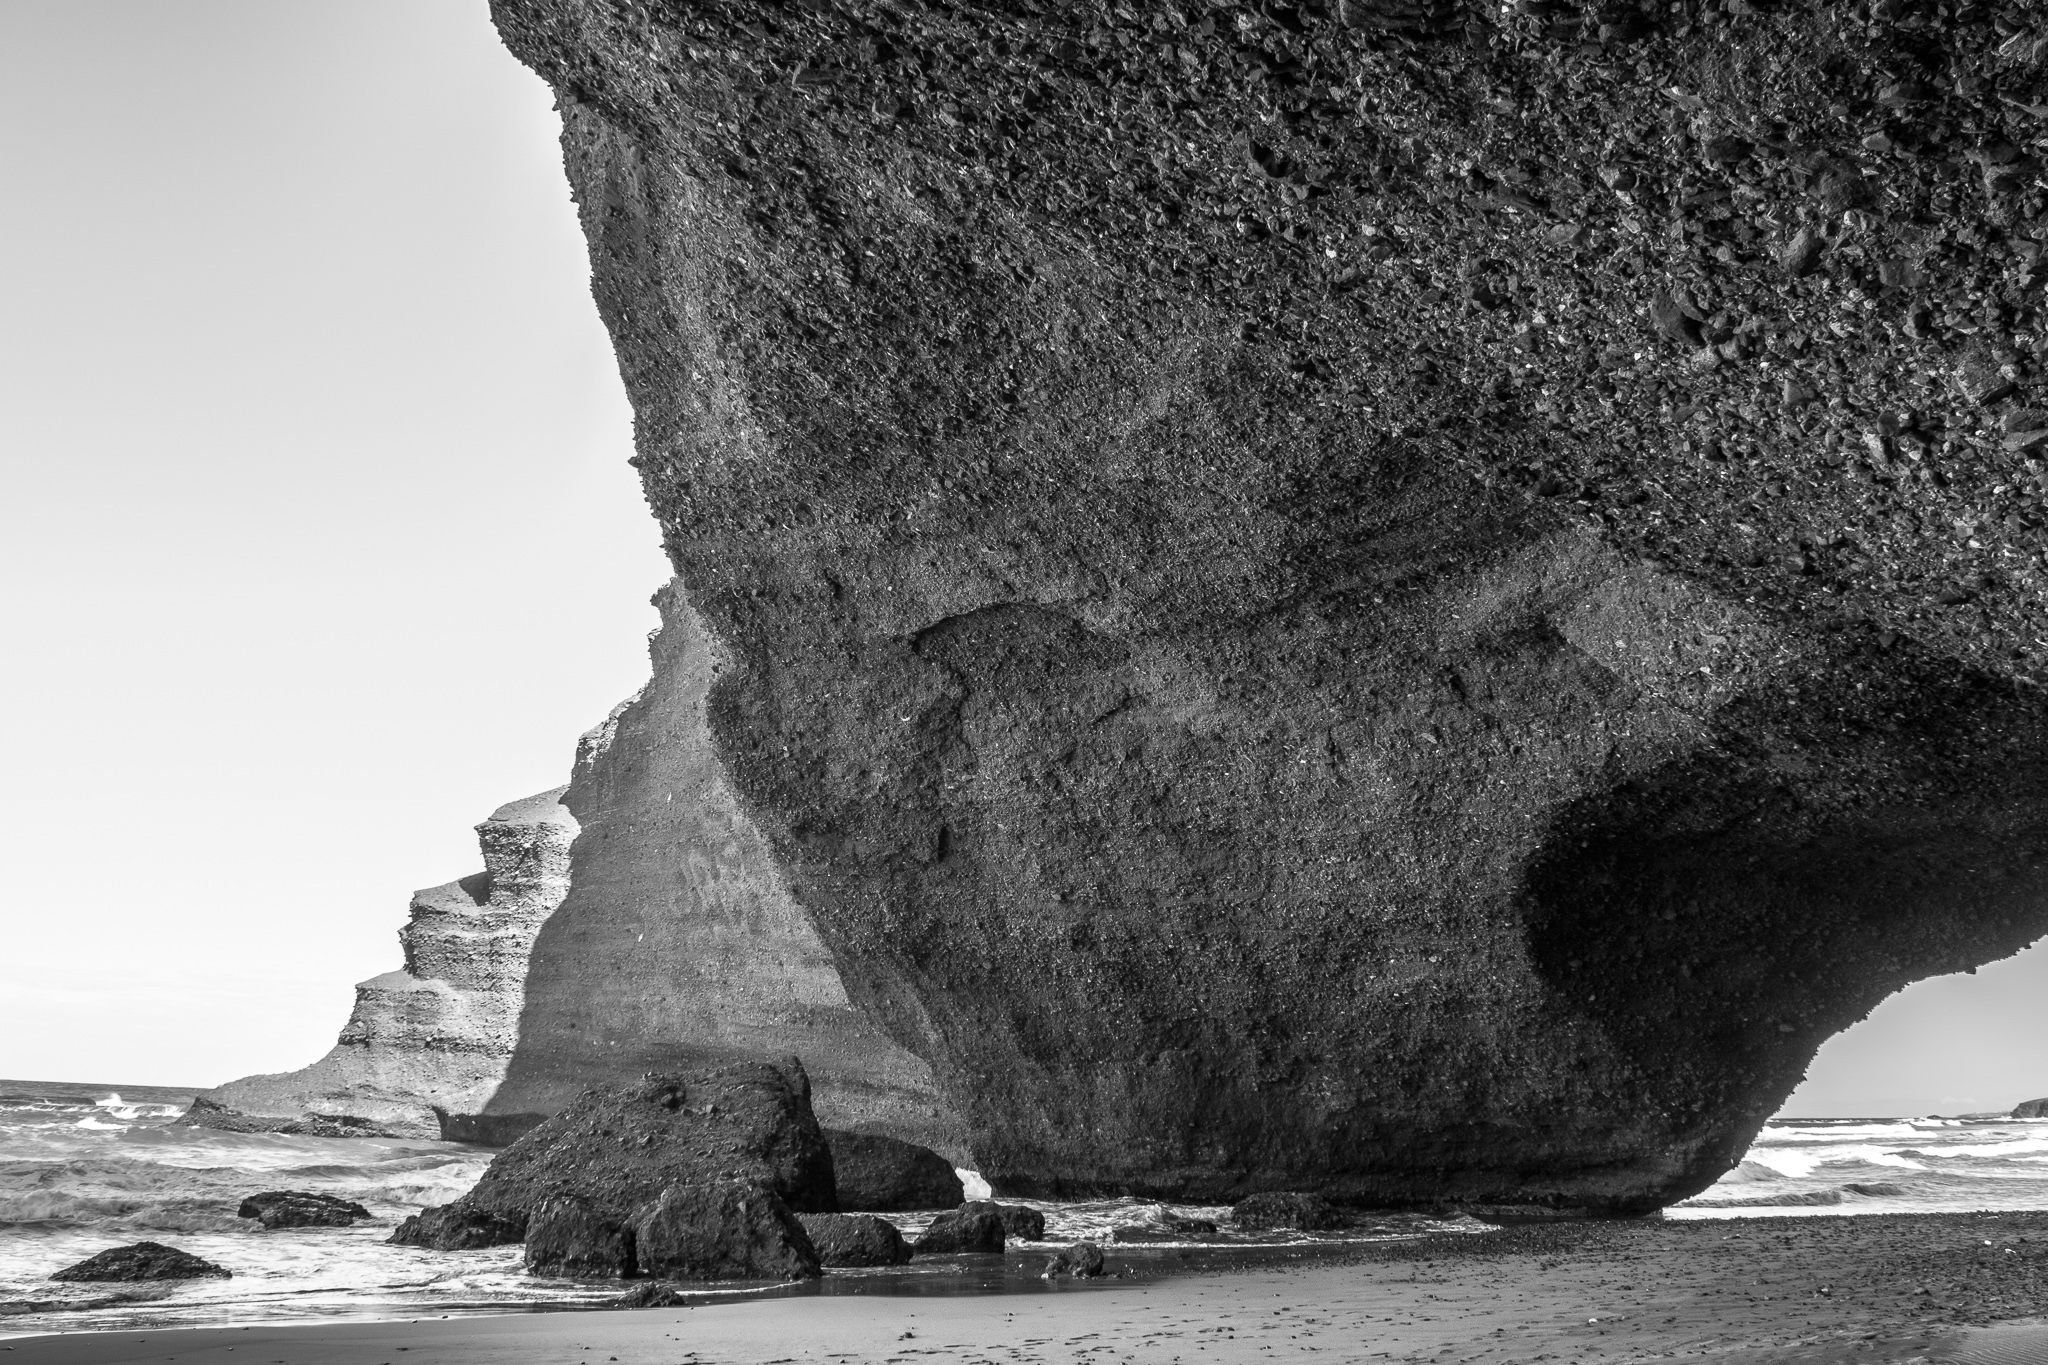 A praia de Legzira atópase uns 10 km ao norte da localidade de Sidi Ifni, antiga colonia española de Marrocos. <br>As súas monumentais pontes naturais, arcos de pedra vermella e pé de elefante, foron tallados pola erosión mariña durante séculos. <br>Recentemente, en 2016, derrubouse tras agretarse, un dos arcos máis emblemáticos da praia.